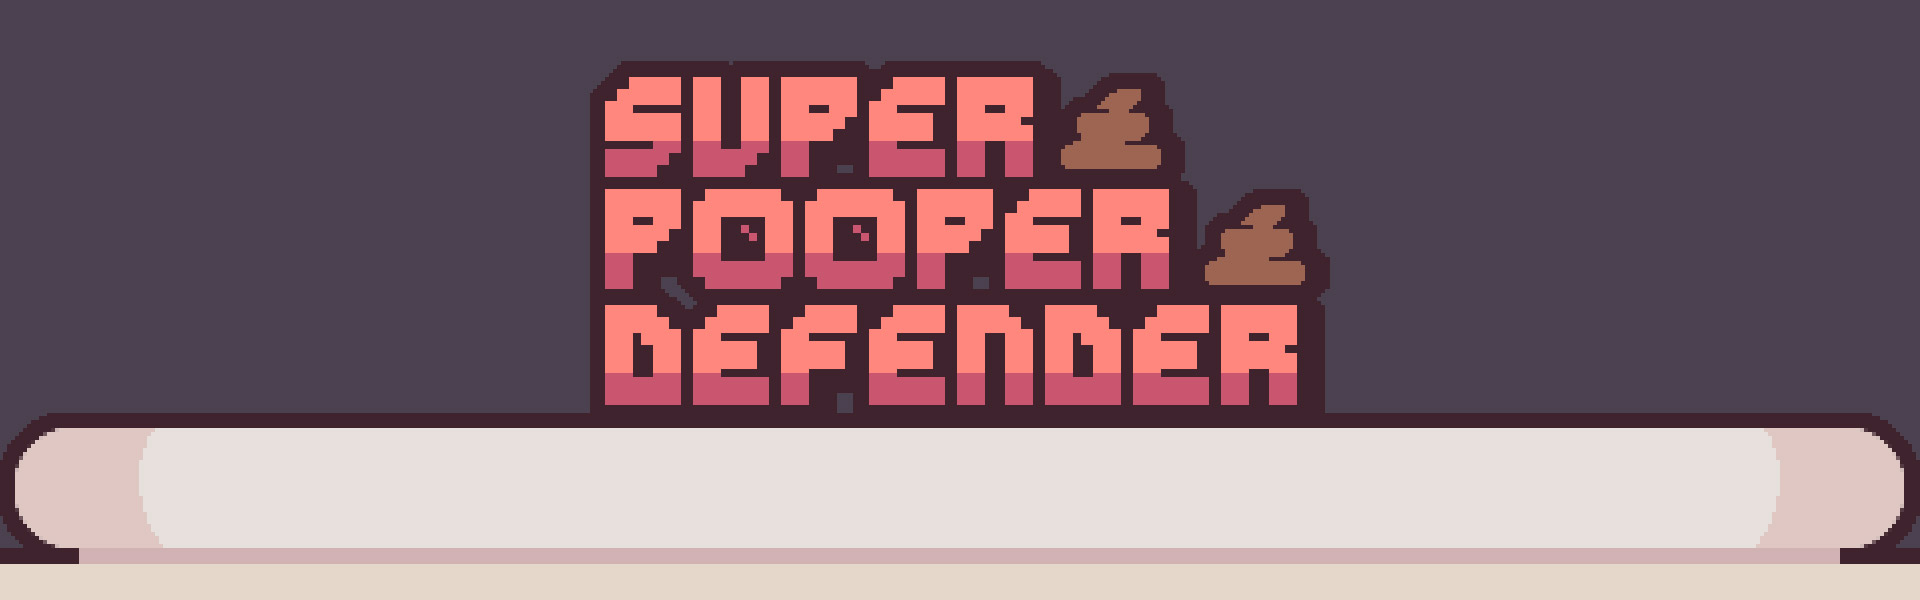 Super Pooper Defender